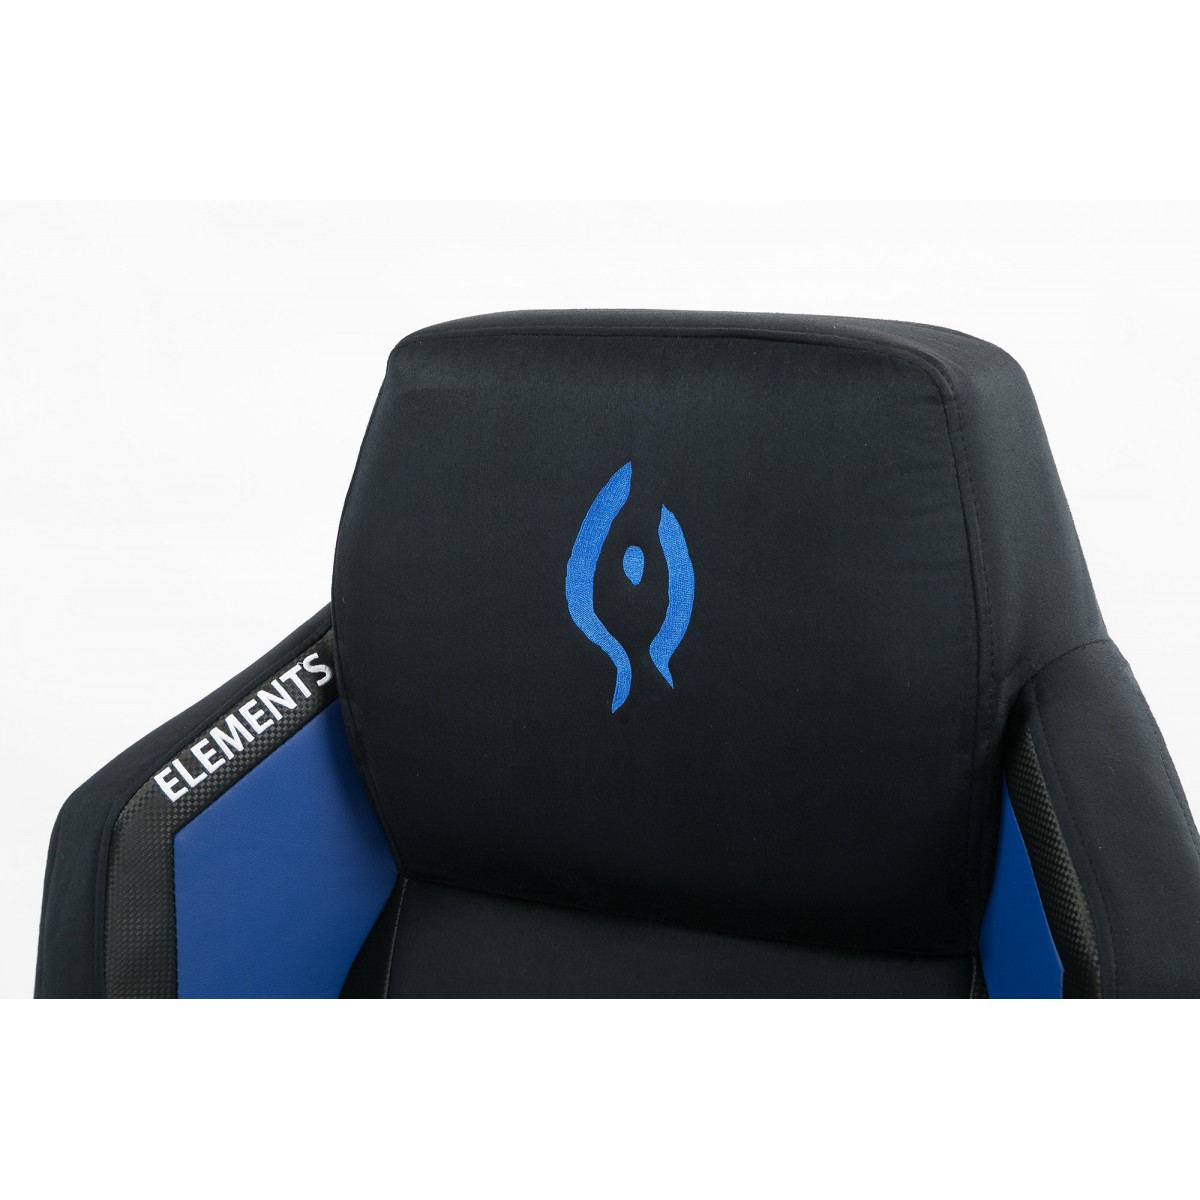 Cadeira Gamer Elements Magna ACQUA, Reclinável, Black-Blue